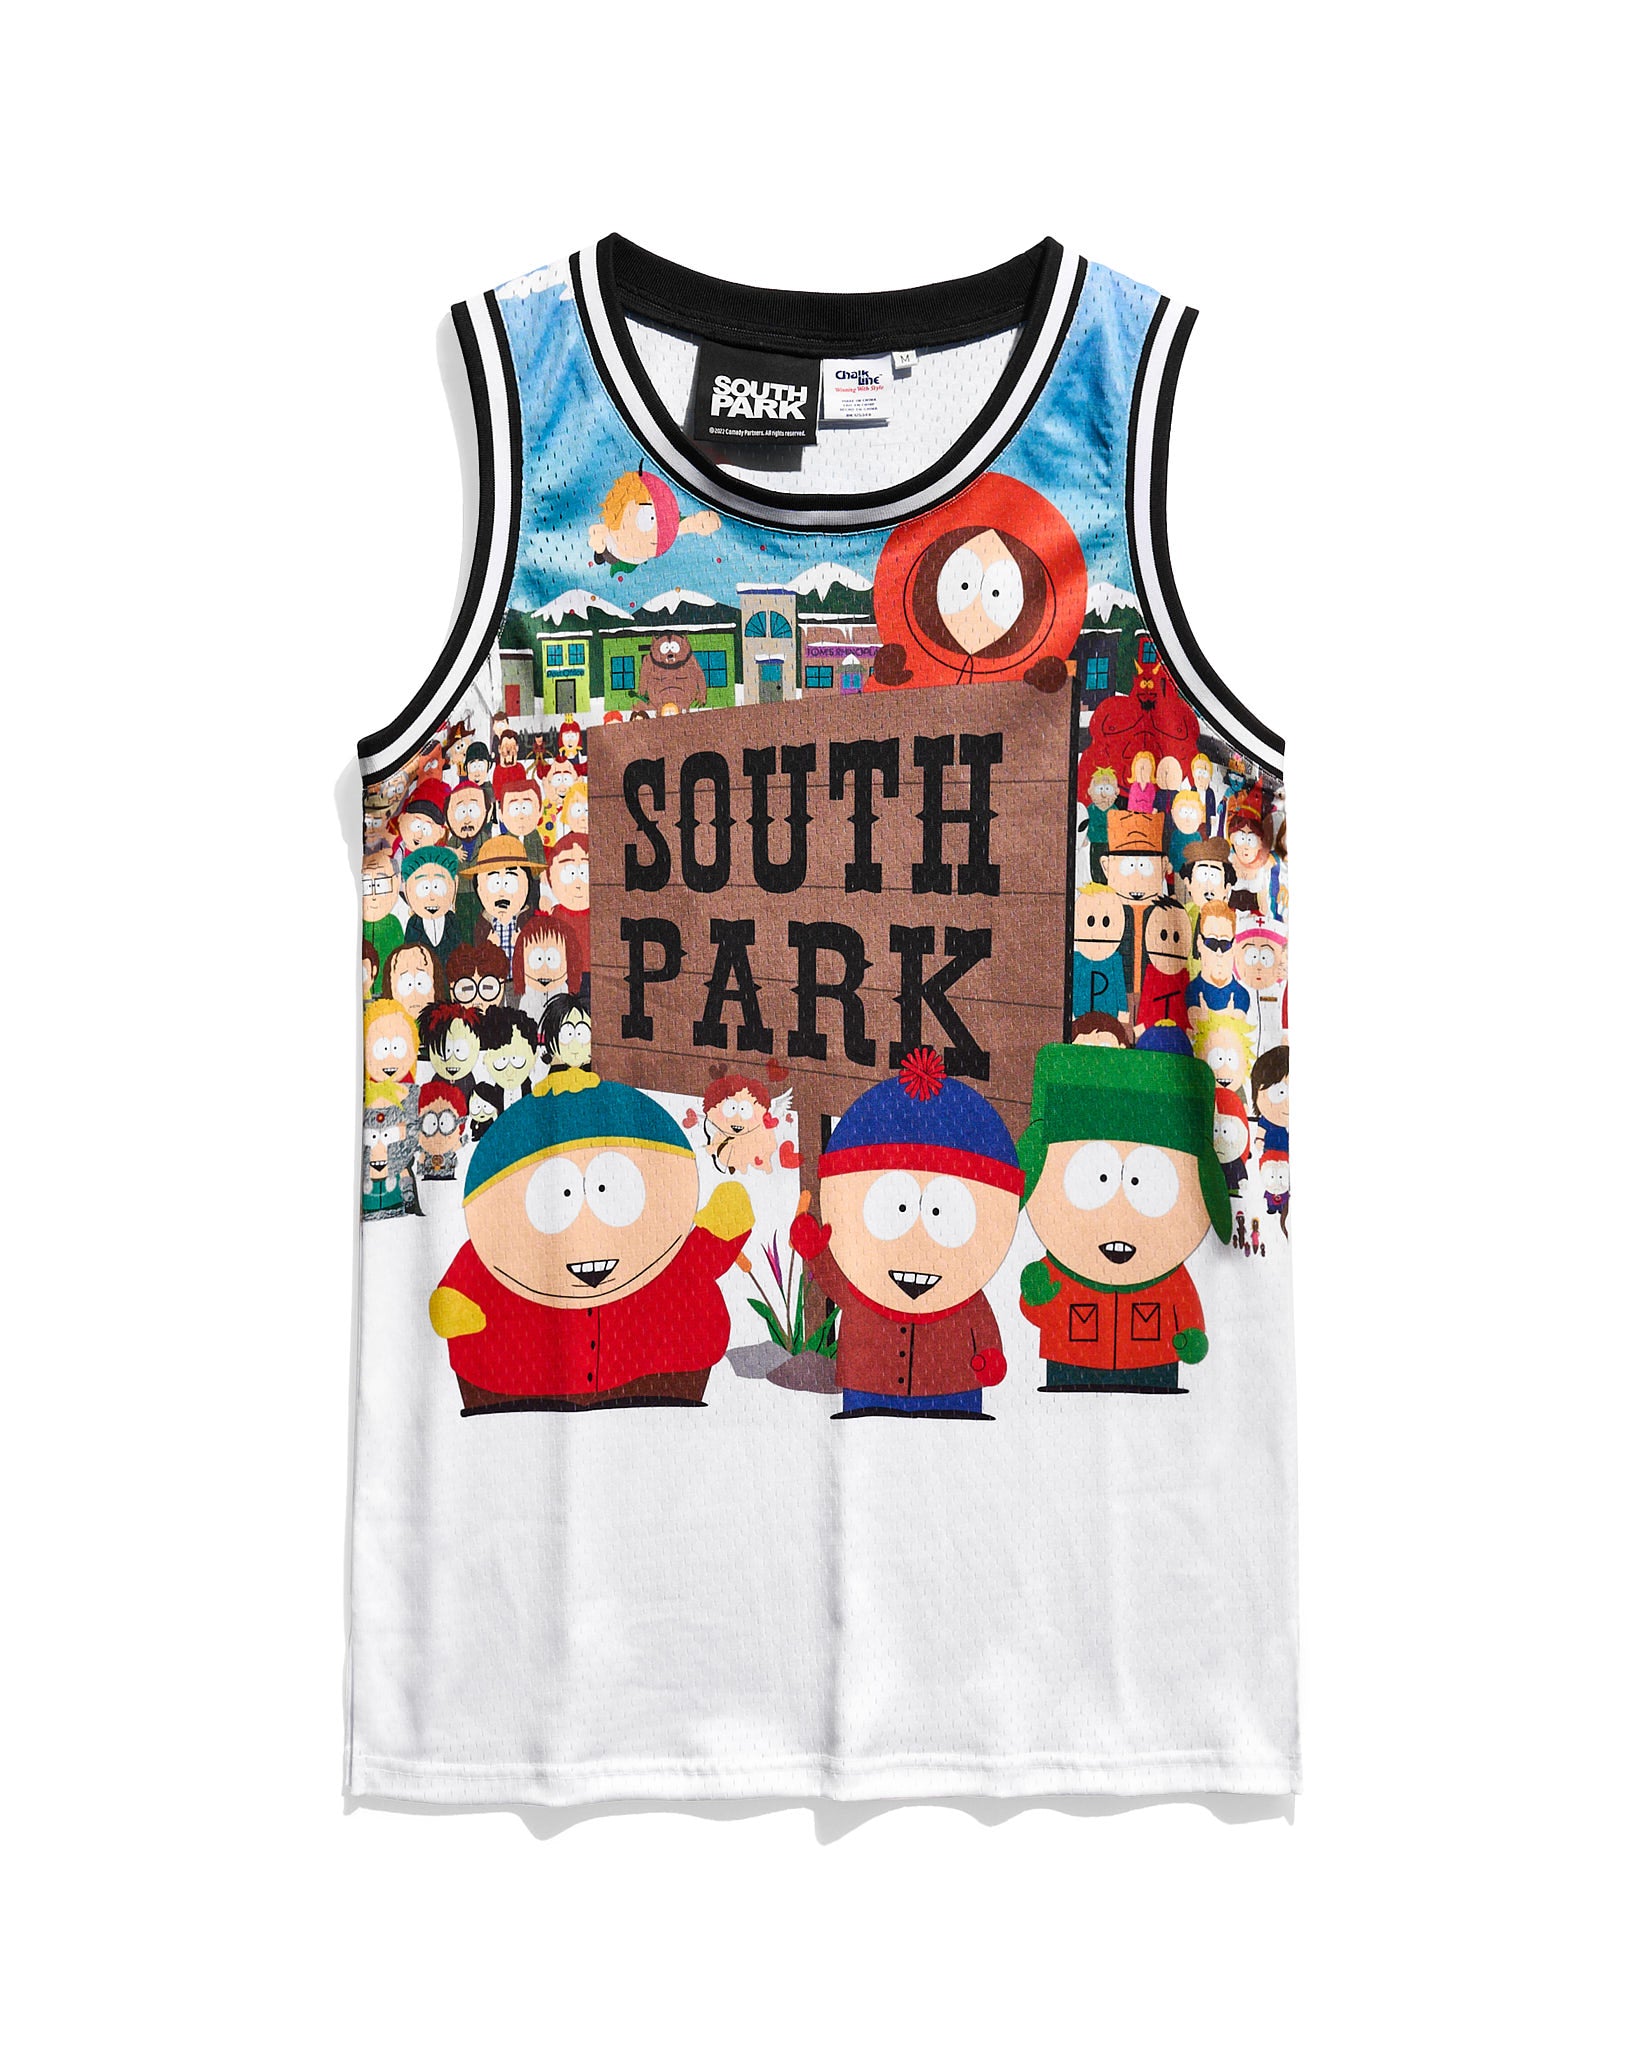 South Park Cast Venice Jersey